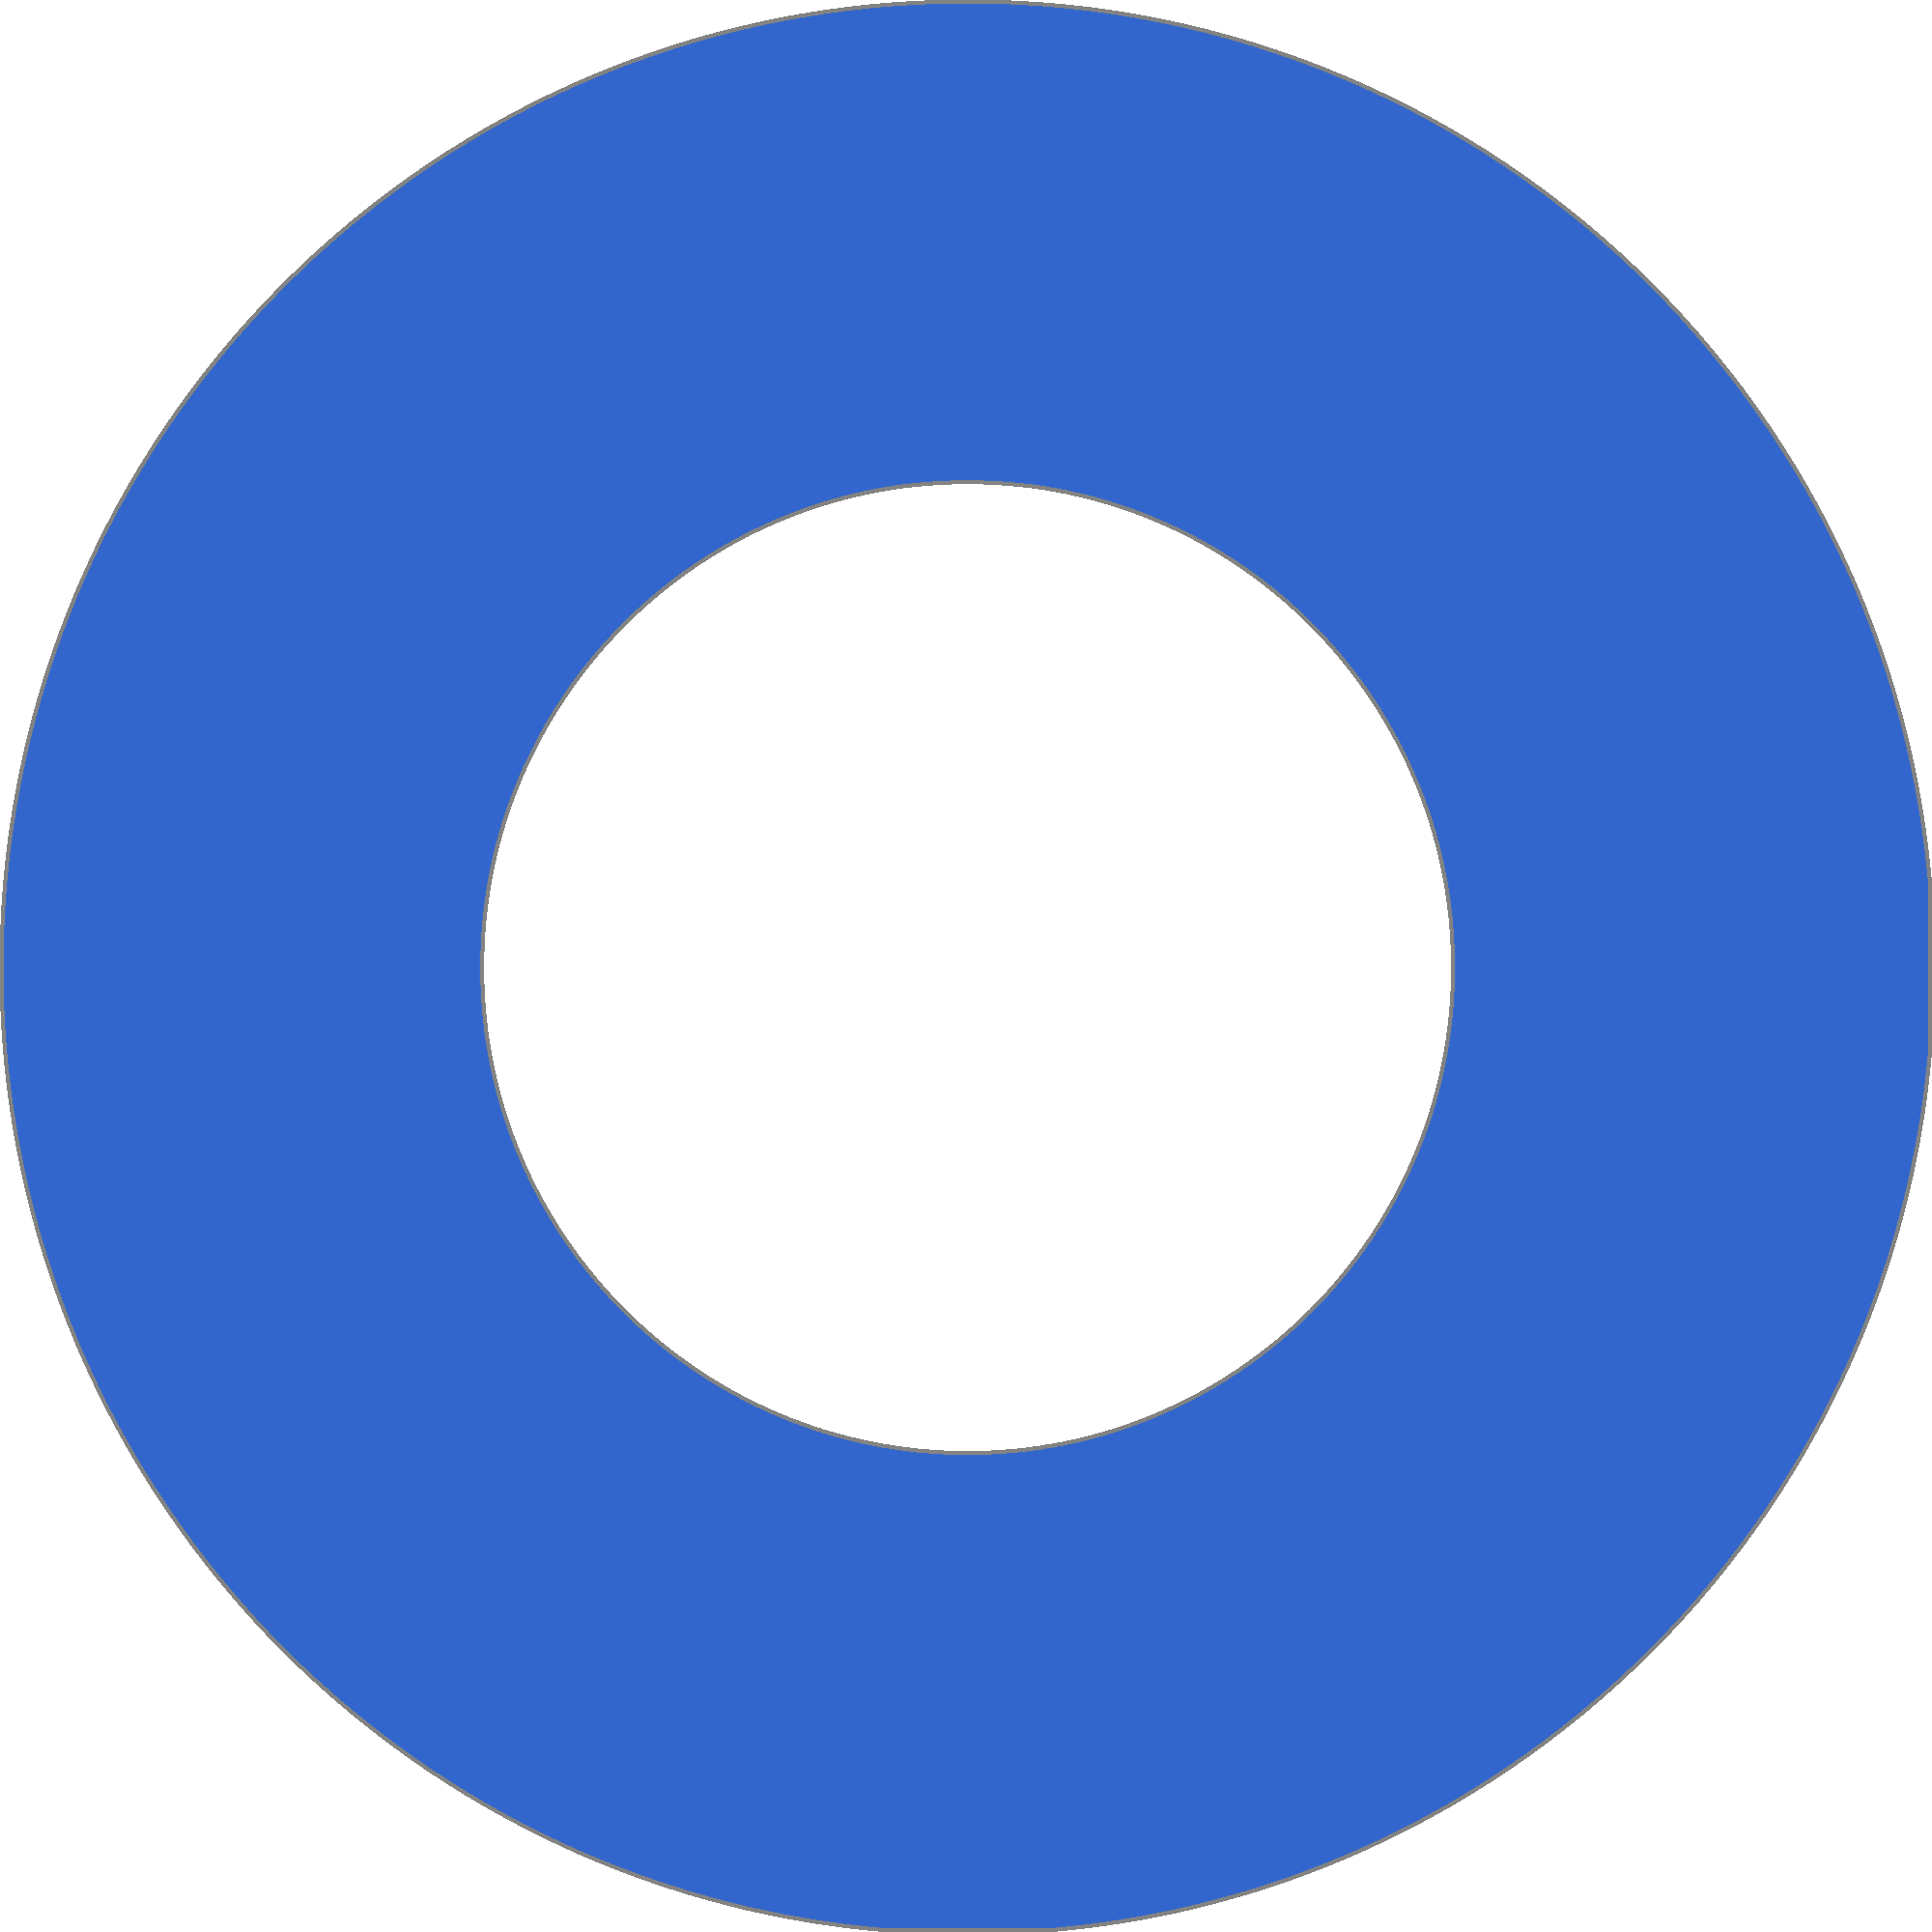 Royal Blue Circle Logo - File:Royalblue circle.png - Wikimedia Commons